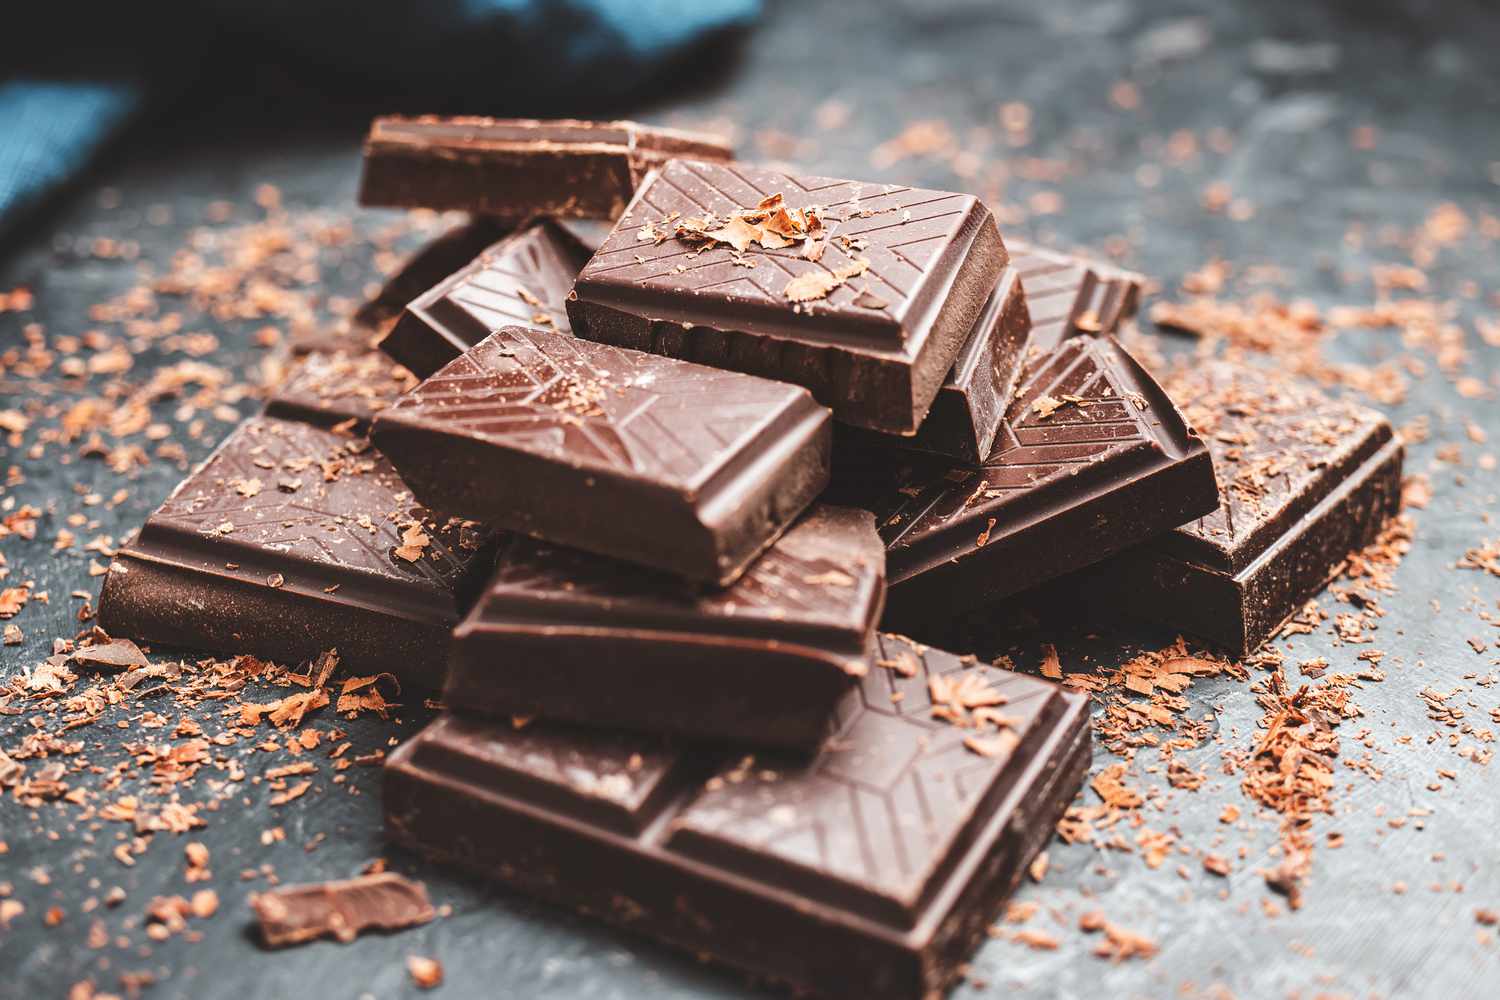 Study exposes hidden dangers of heavy metals in chocolate